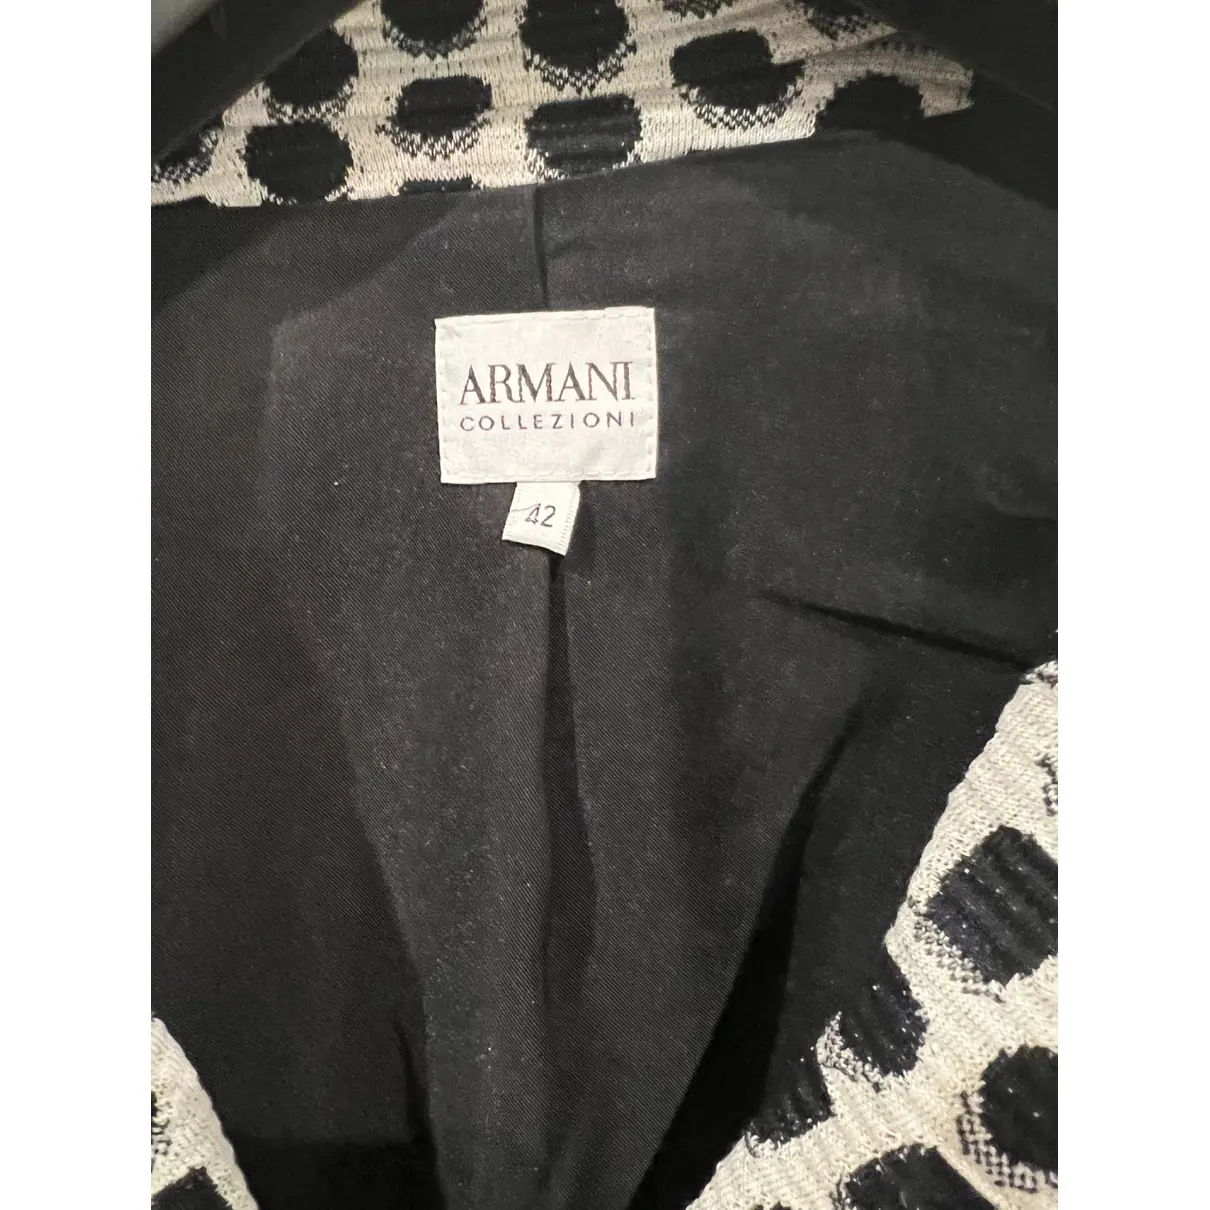 Buy Armani Collezioni Blazer online